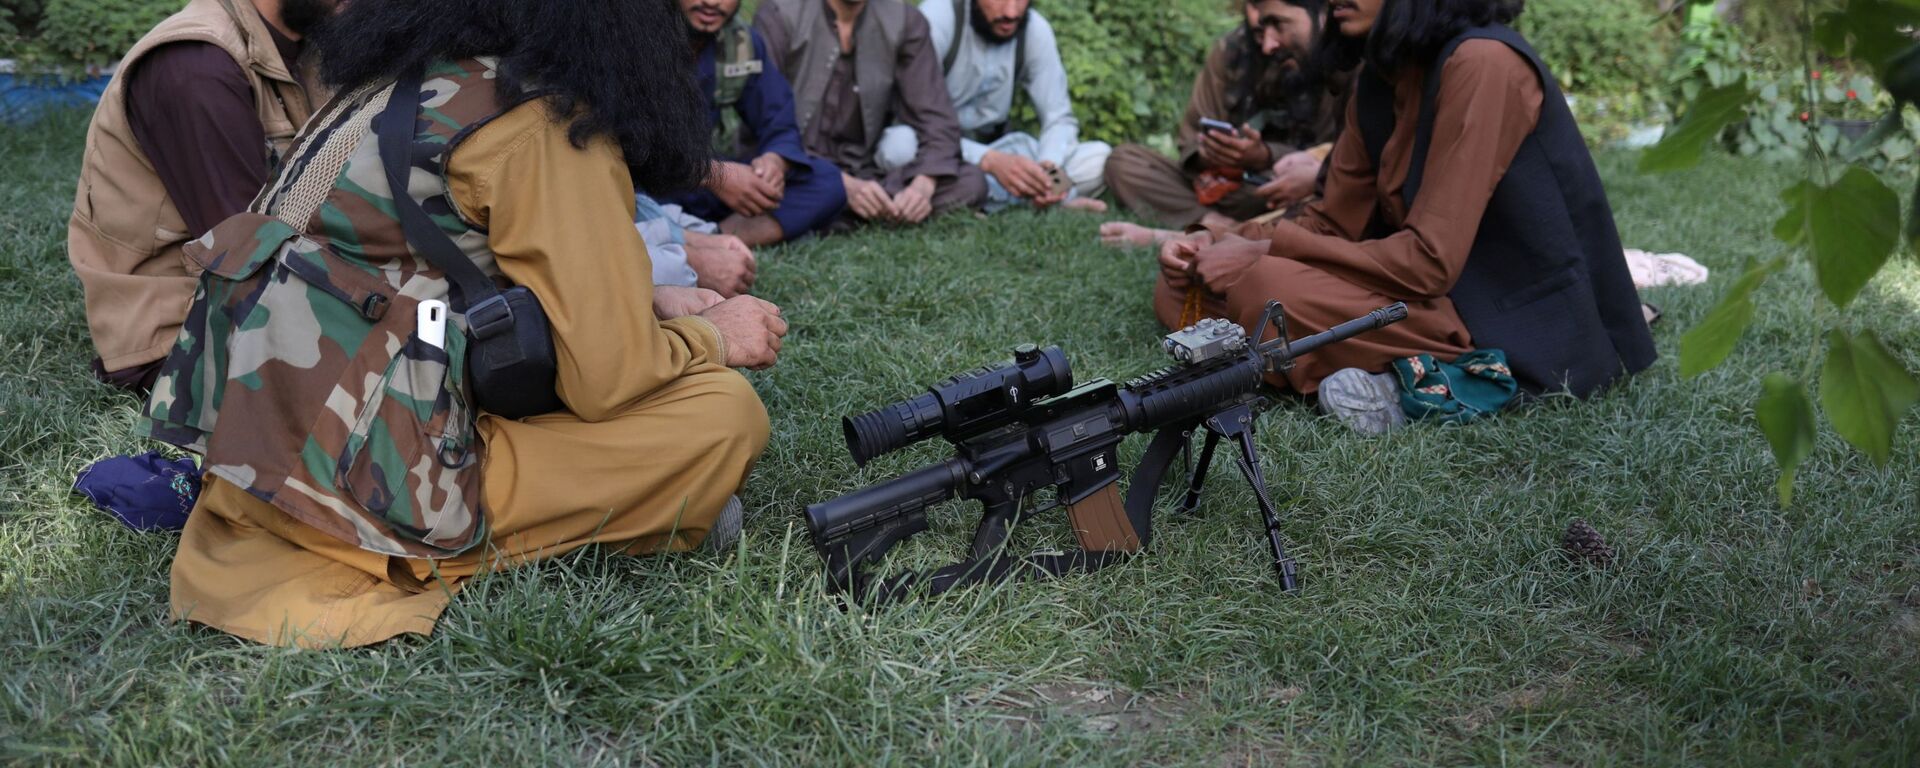 Бойцы Талибана* в парке развлечений в Кабуле  - Sputnik Ўзбекистон, 1920, 16.09.2021